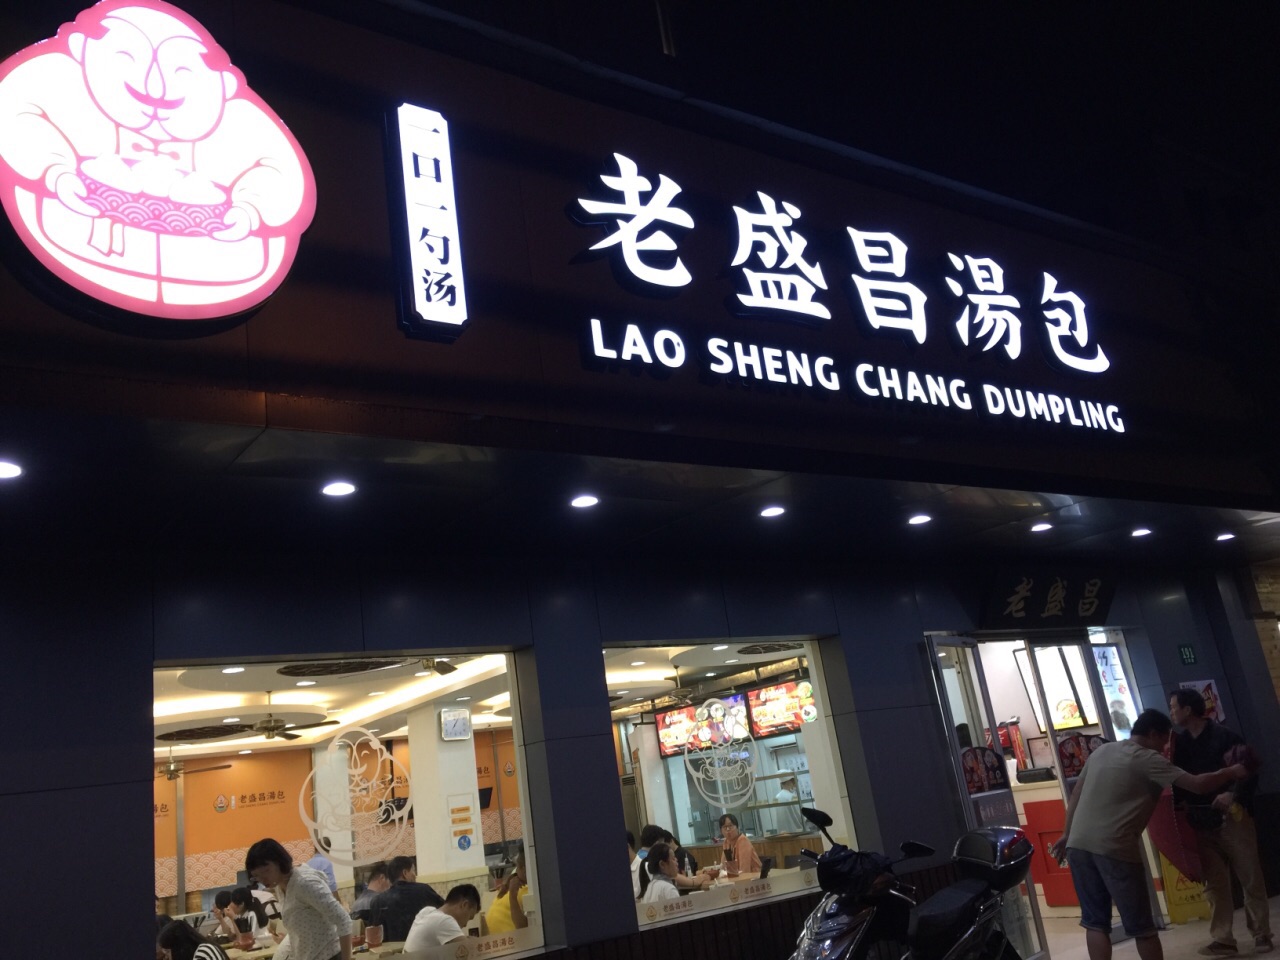 上海老盛昌汤包(水清店)好吃吗,老盛昌汤包(水清店)味道怎么样,环境